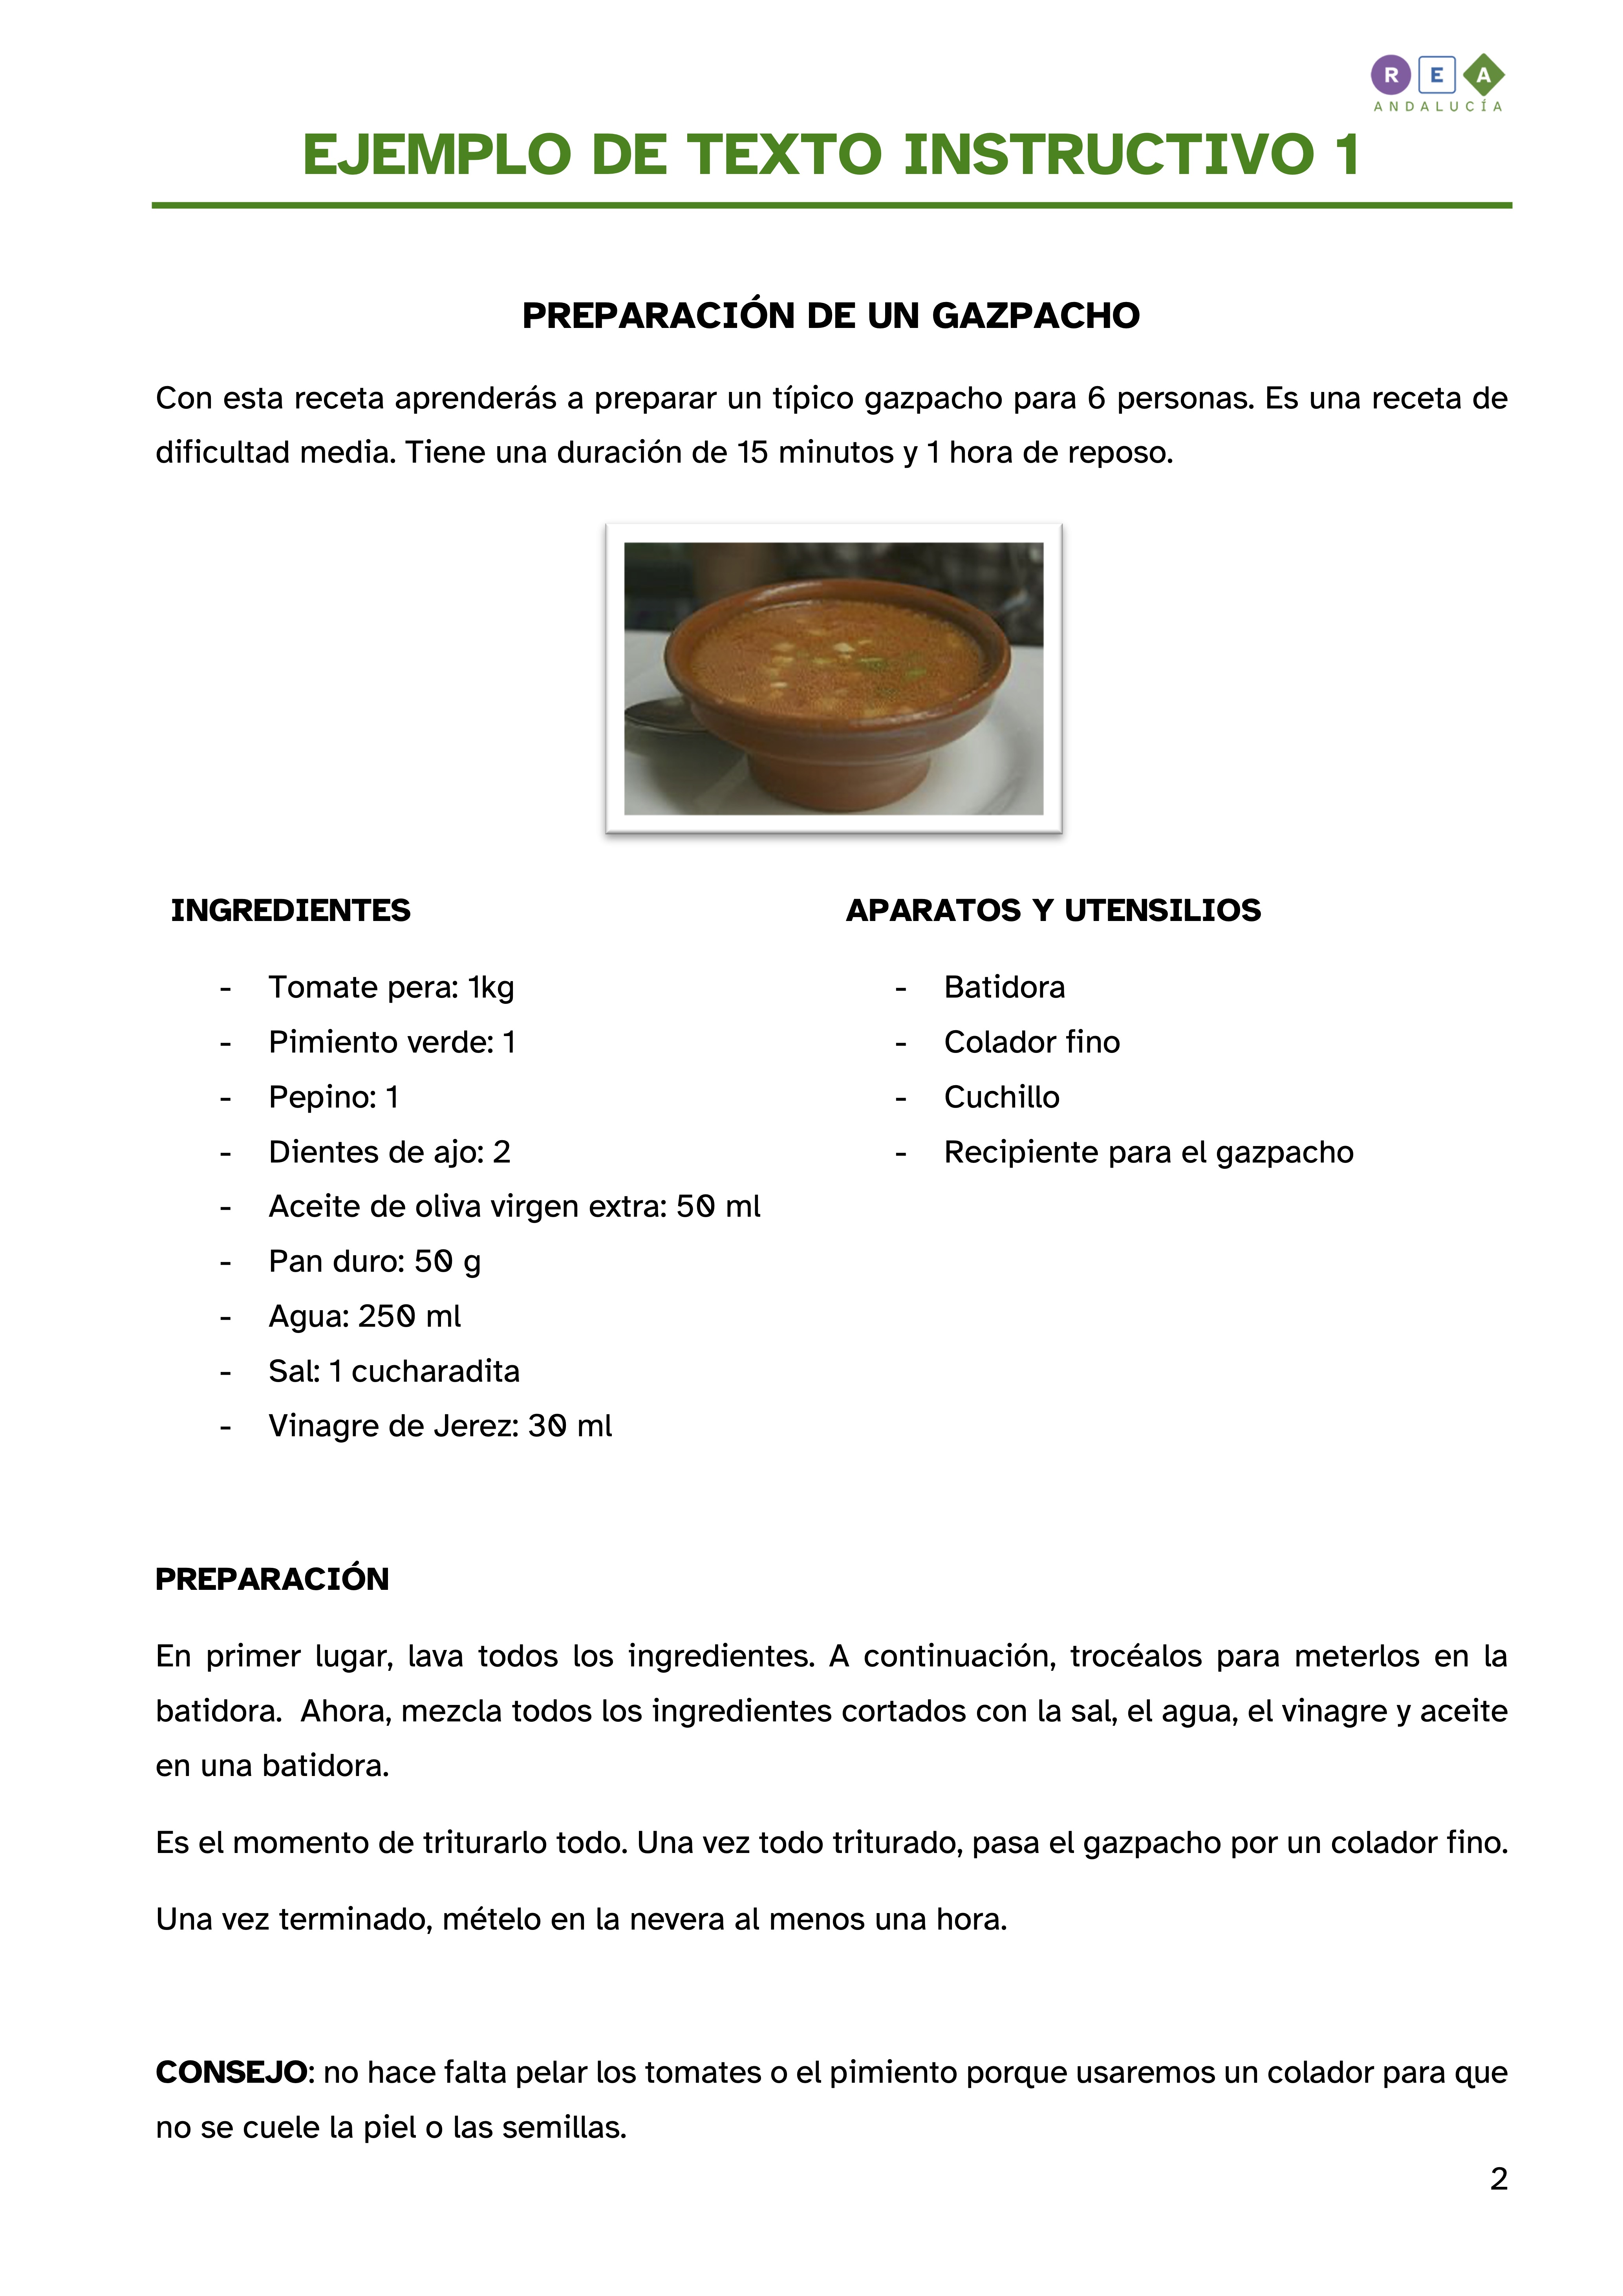 Texto instructivo sobre la preparación de un gazpacho: ingredientes, aparatos y utensilios, preparación y consejo.